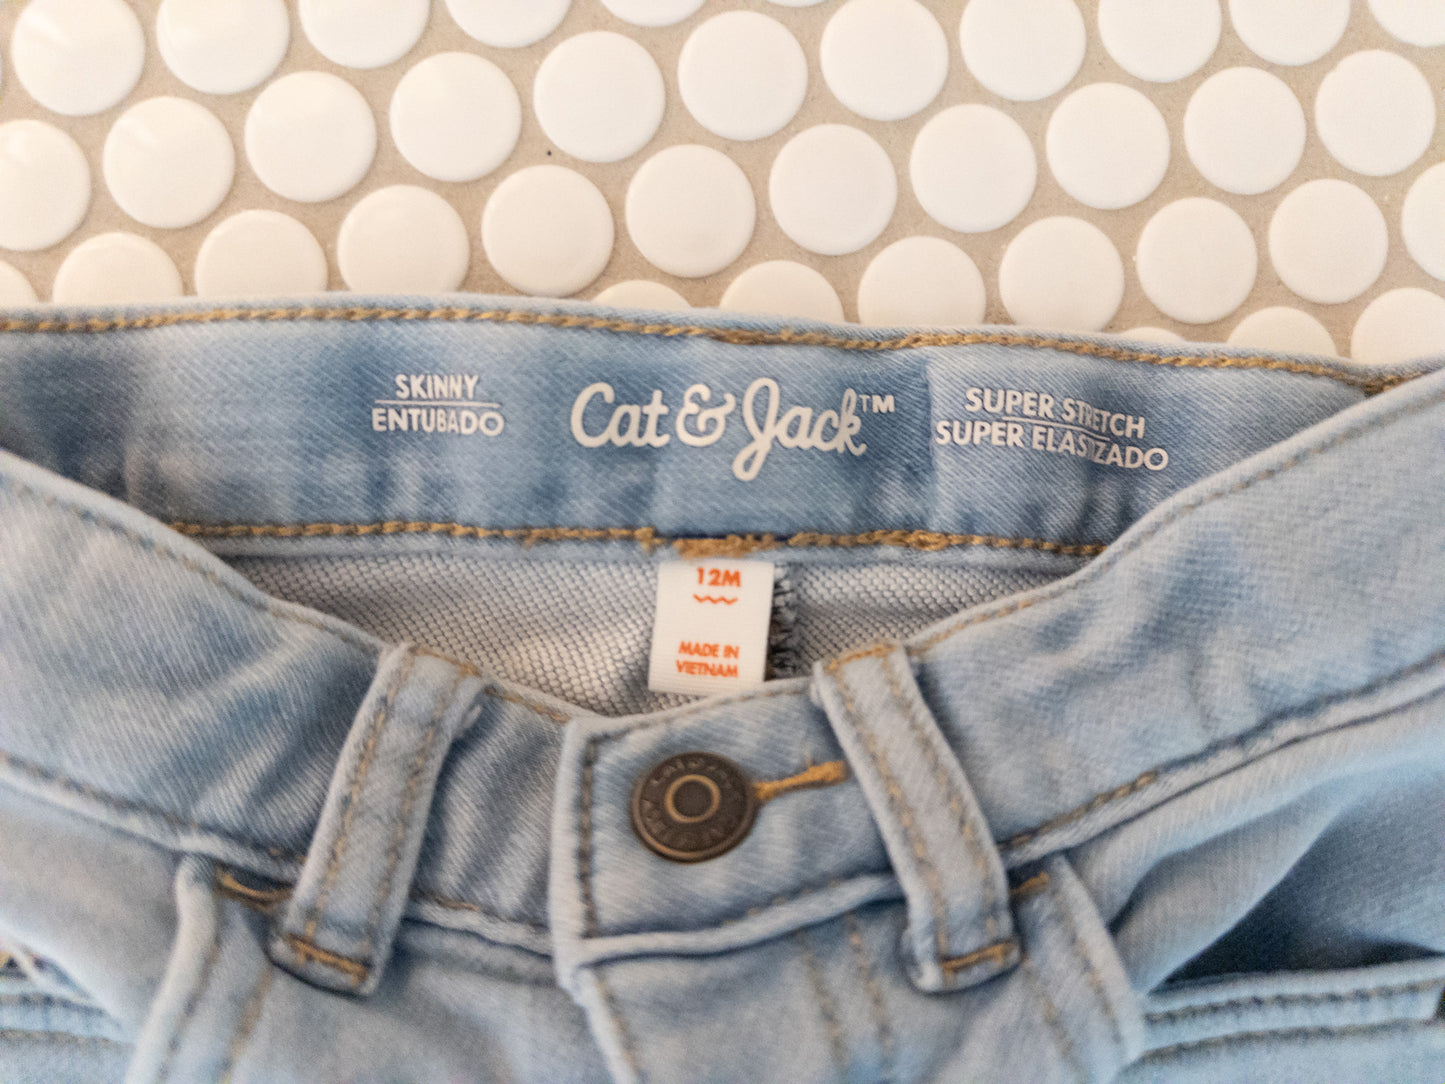 Cat & Jack 12m Light Wash Jeans - EUC